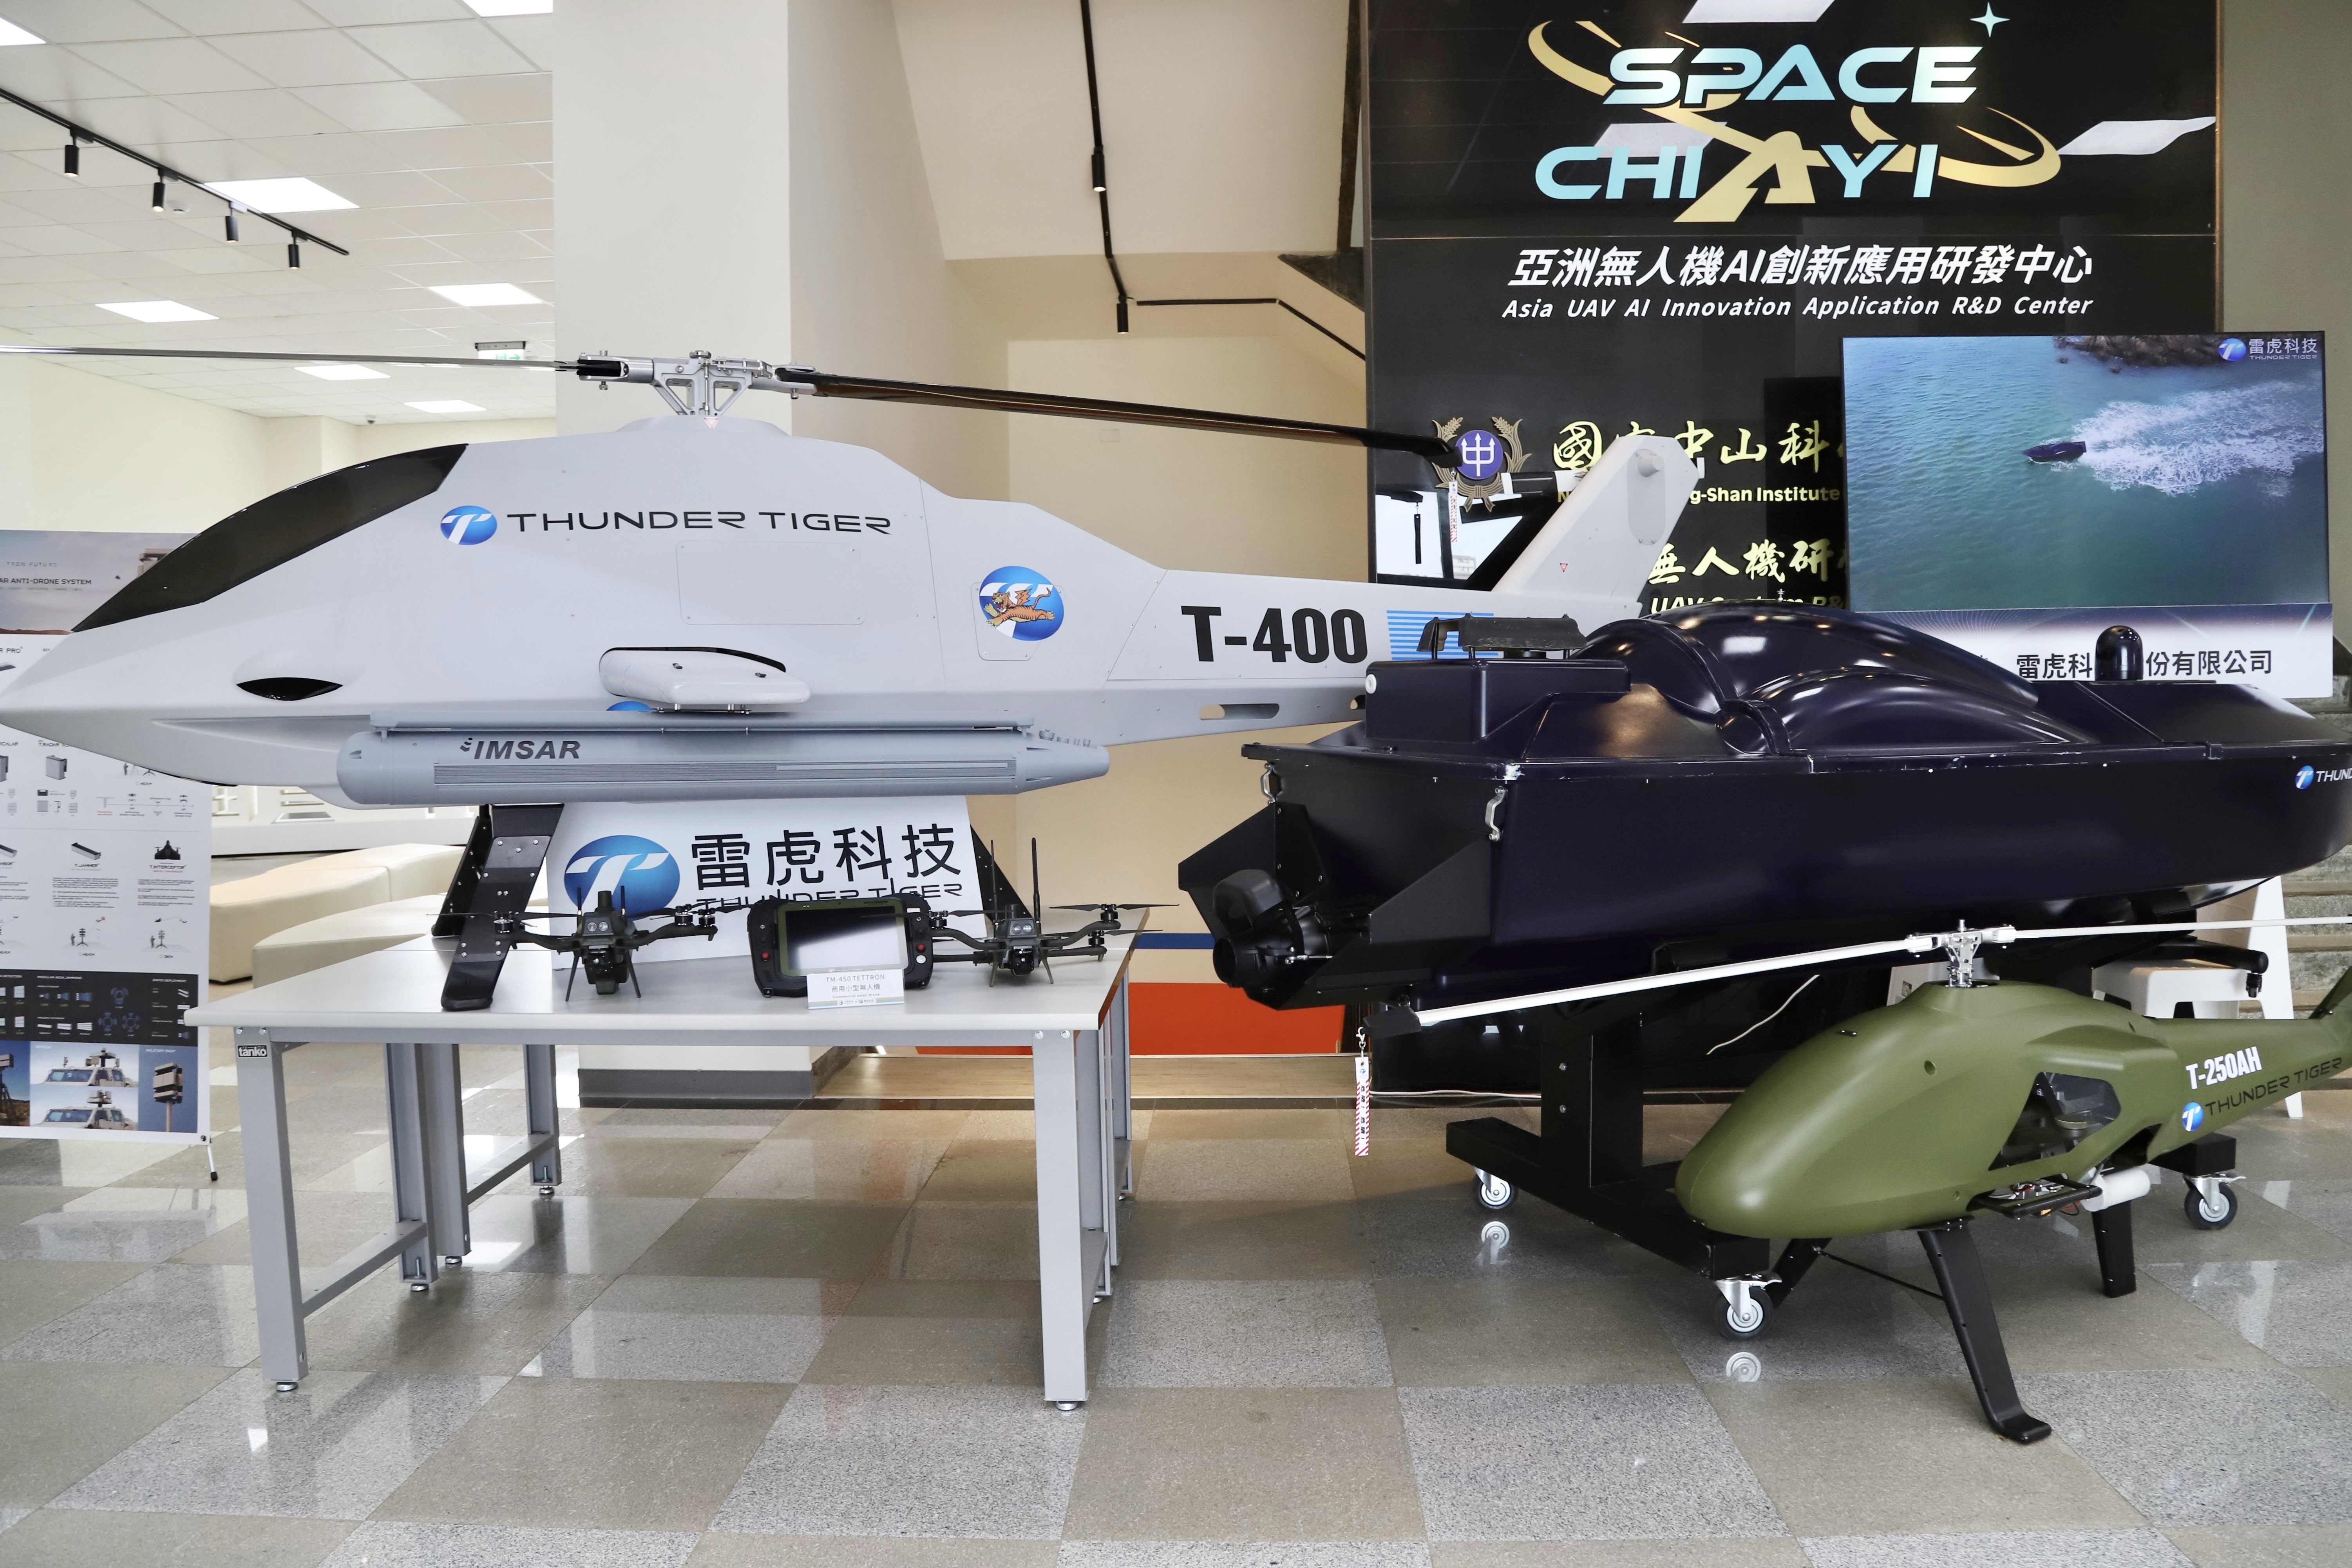 雷虎科技等厂商展示各种无人机产品。嘉义县政府提供